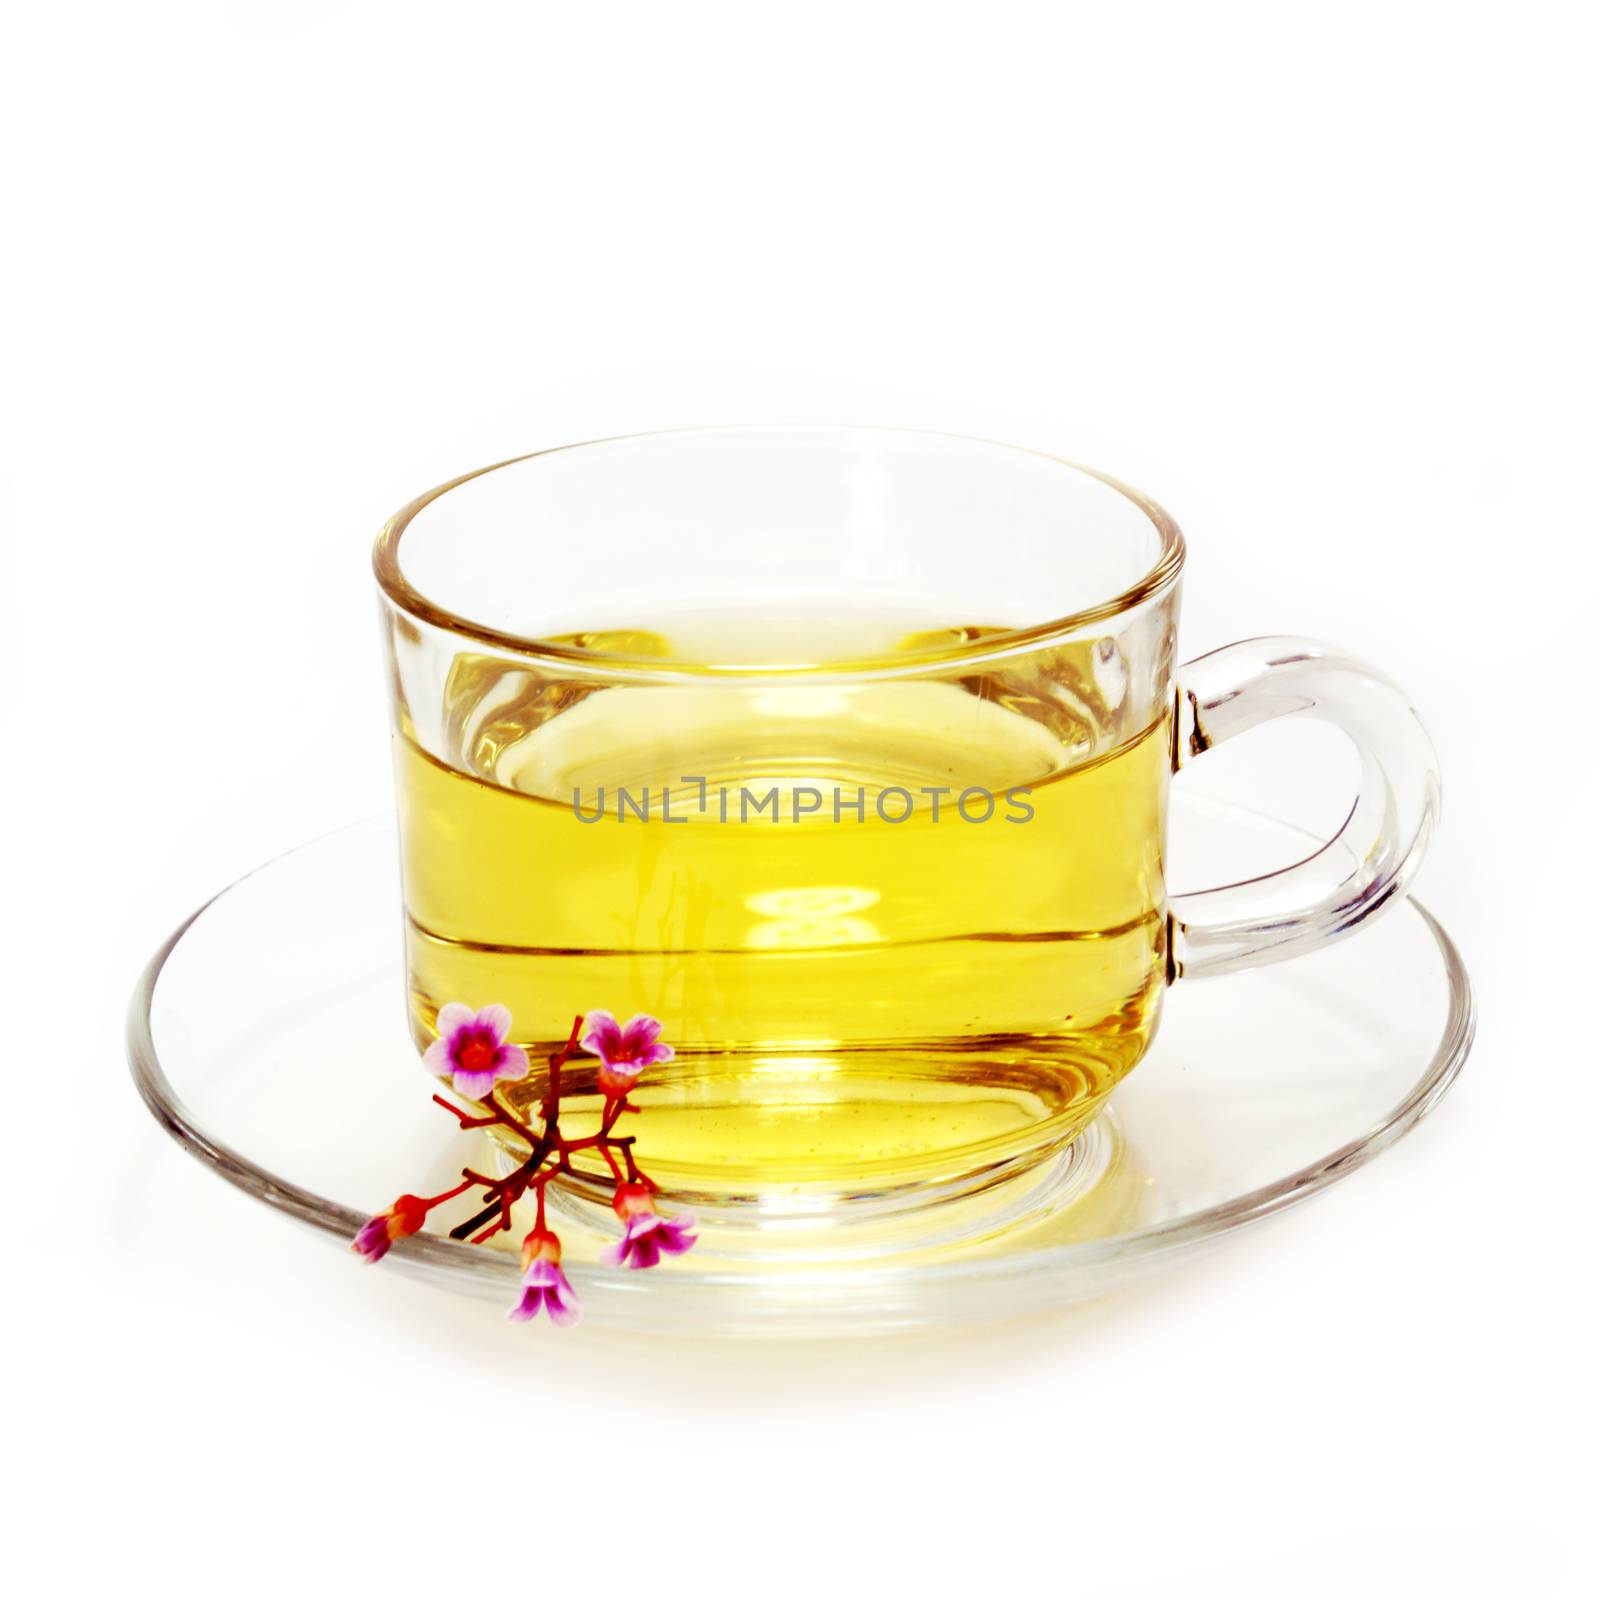 Flower tea mix honey and lemon.